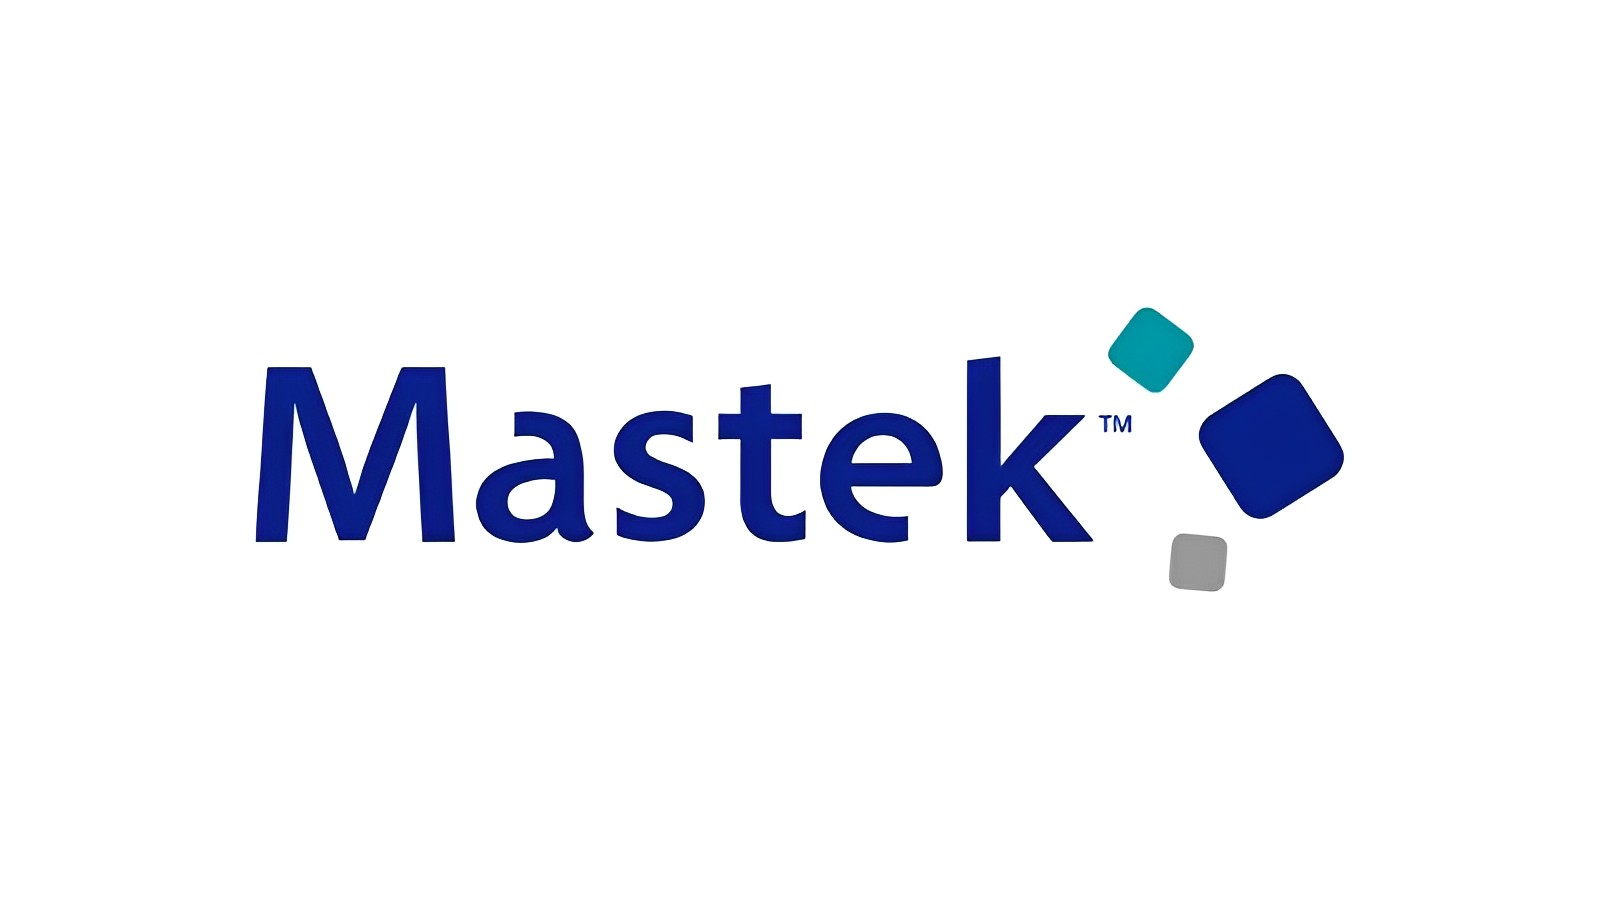 Mastek shares surge 13% post impressive Q4 results: Investment outlook?